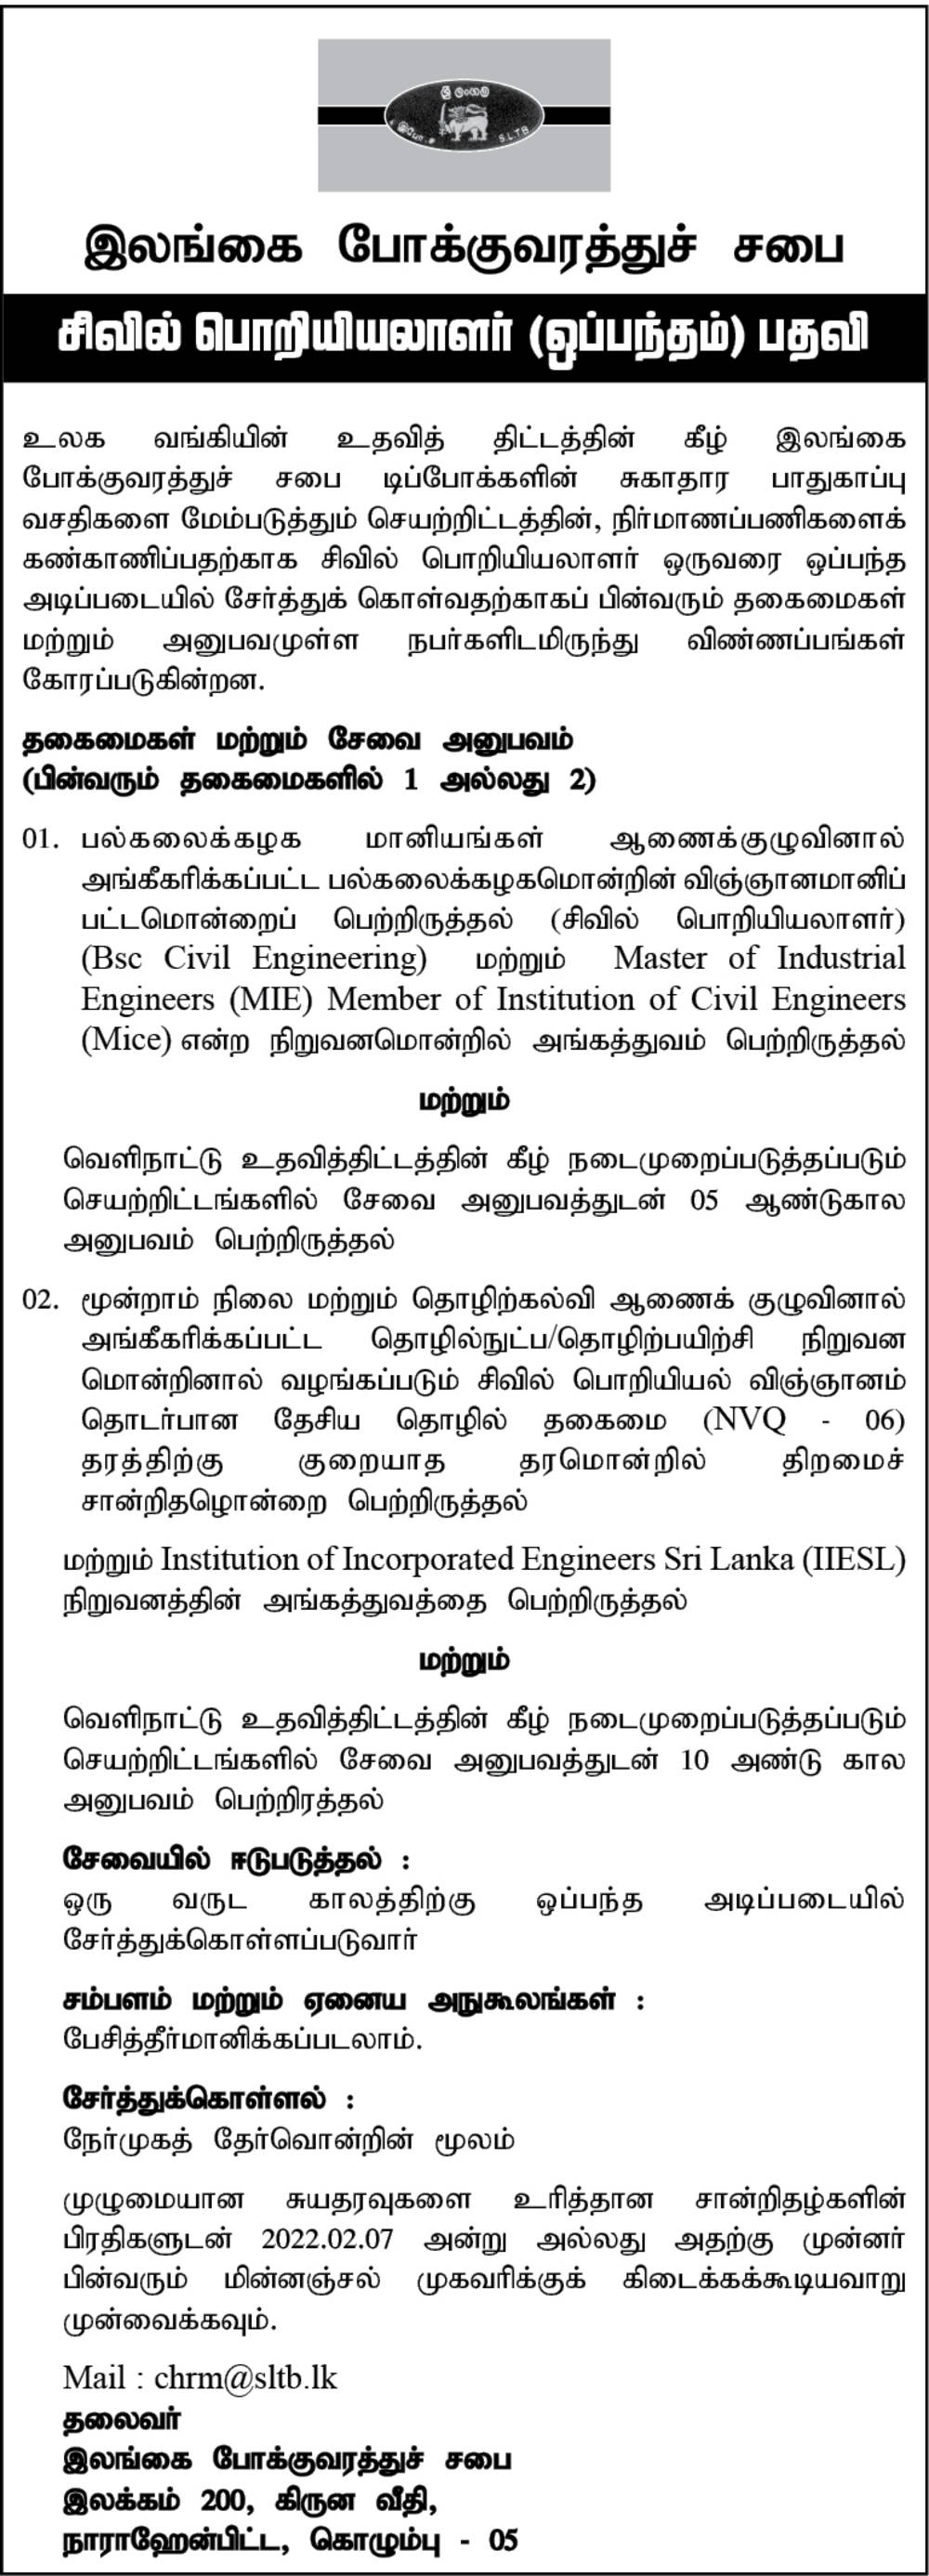 Civil Engineer Job Vacancy in SLTB Tamil Details